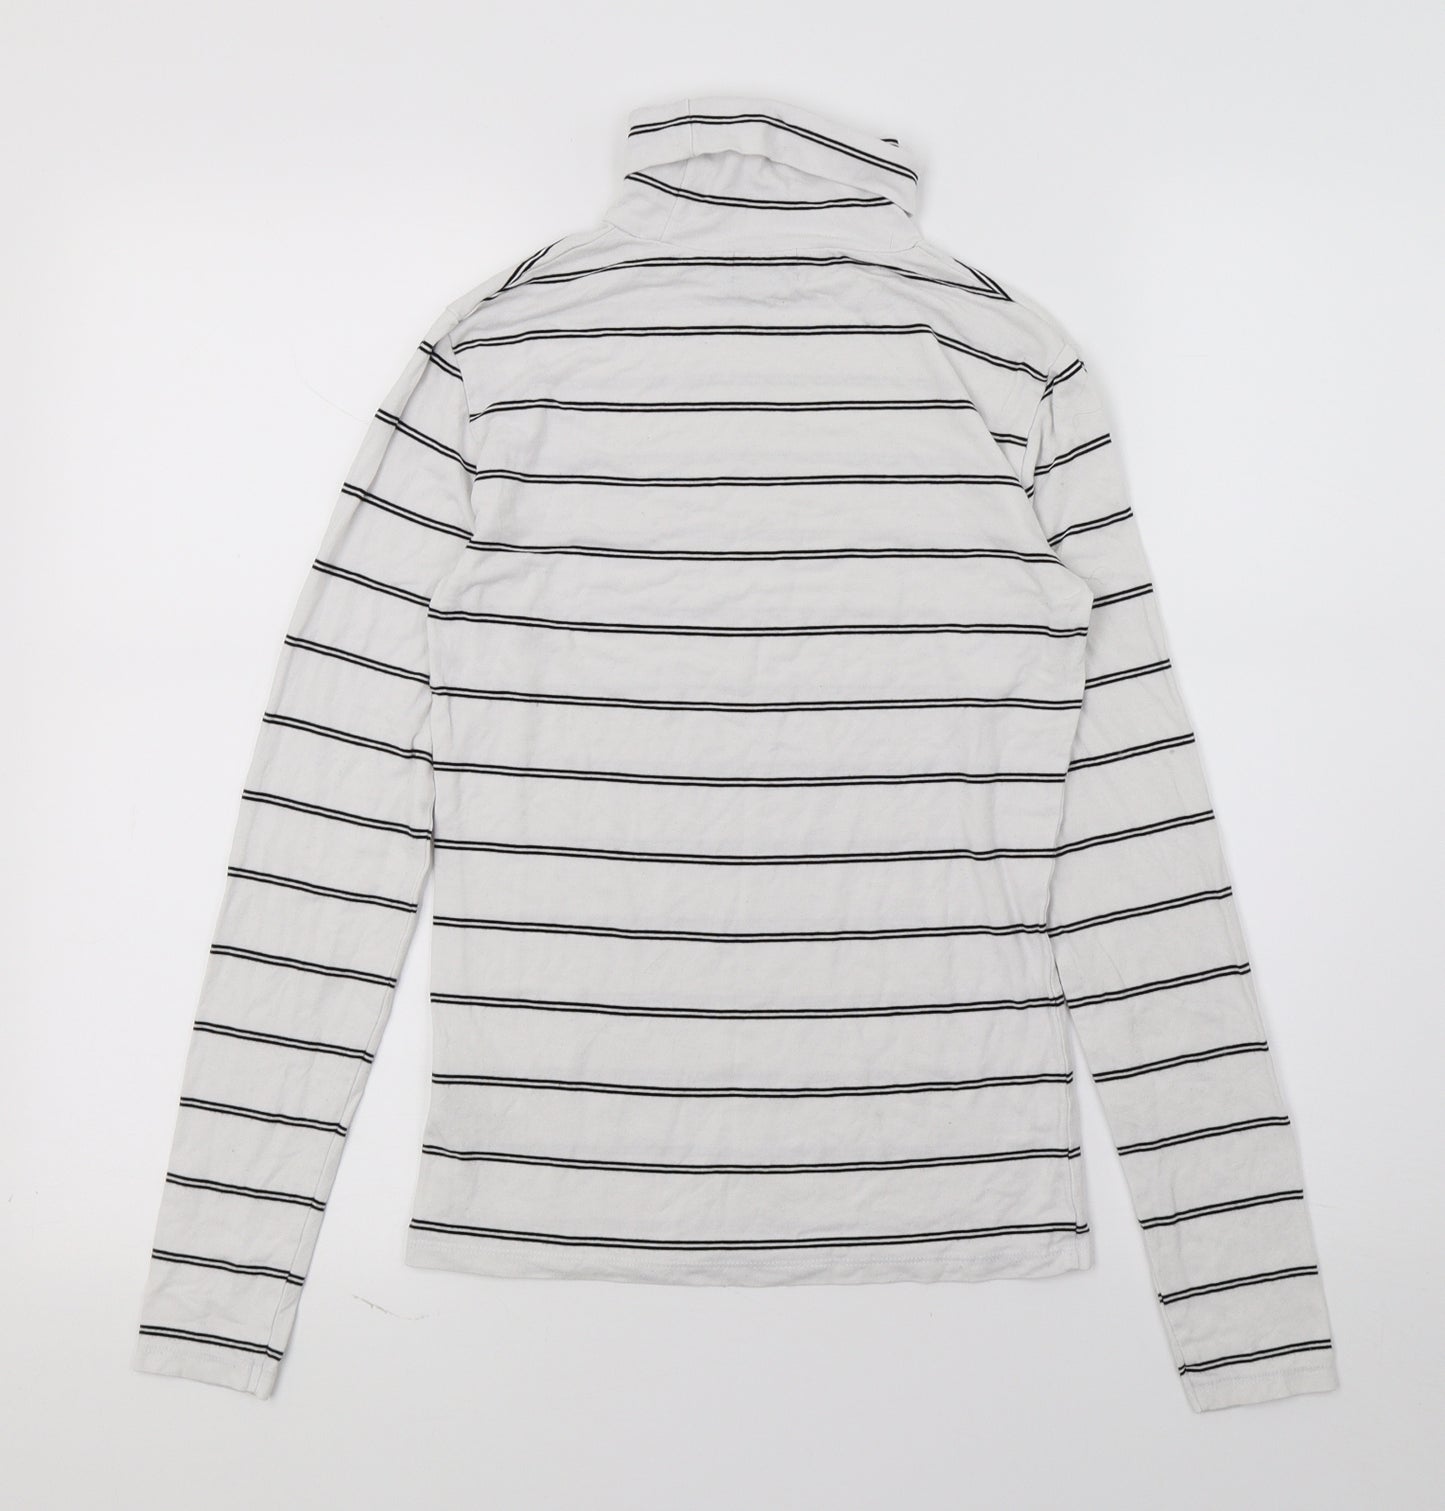 Dotti Womens White Striped Jersey Basic T-Shirt Size XS